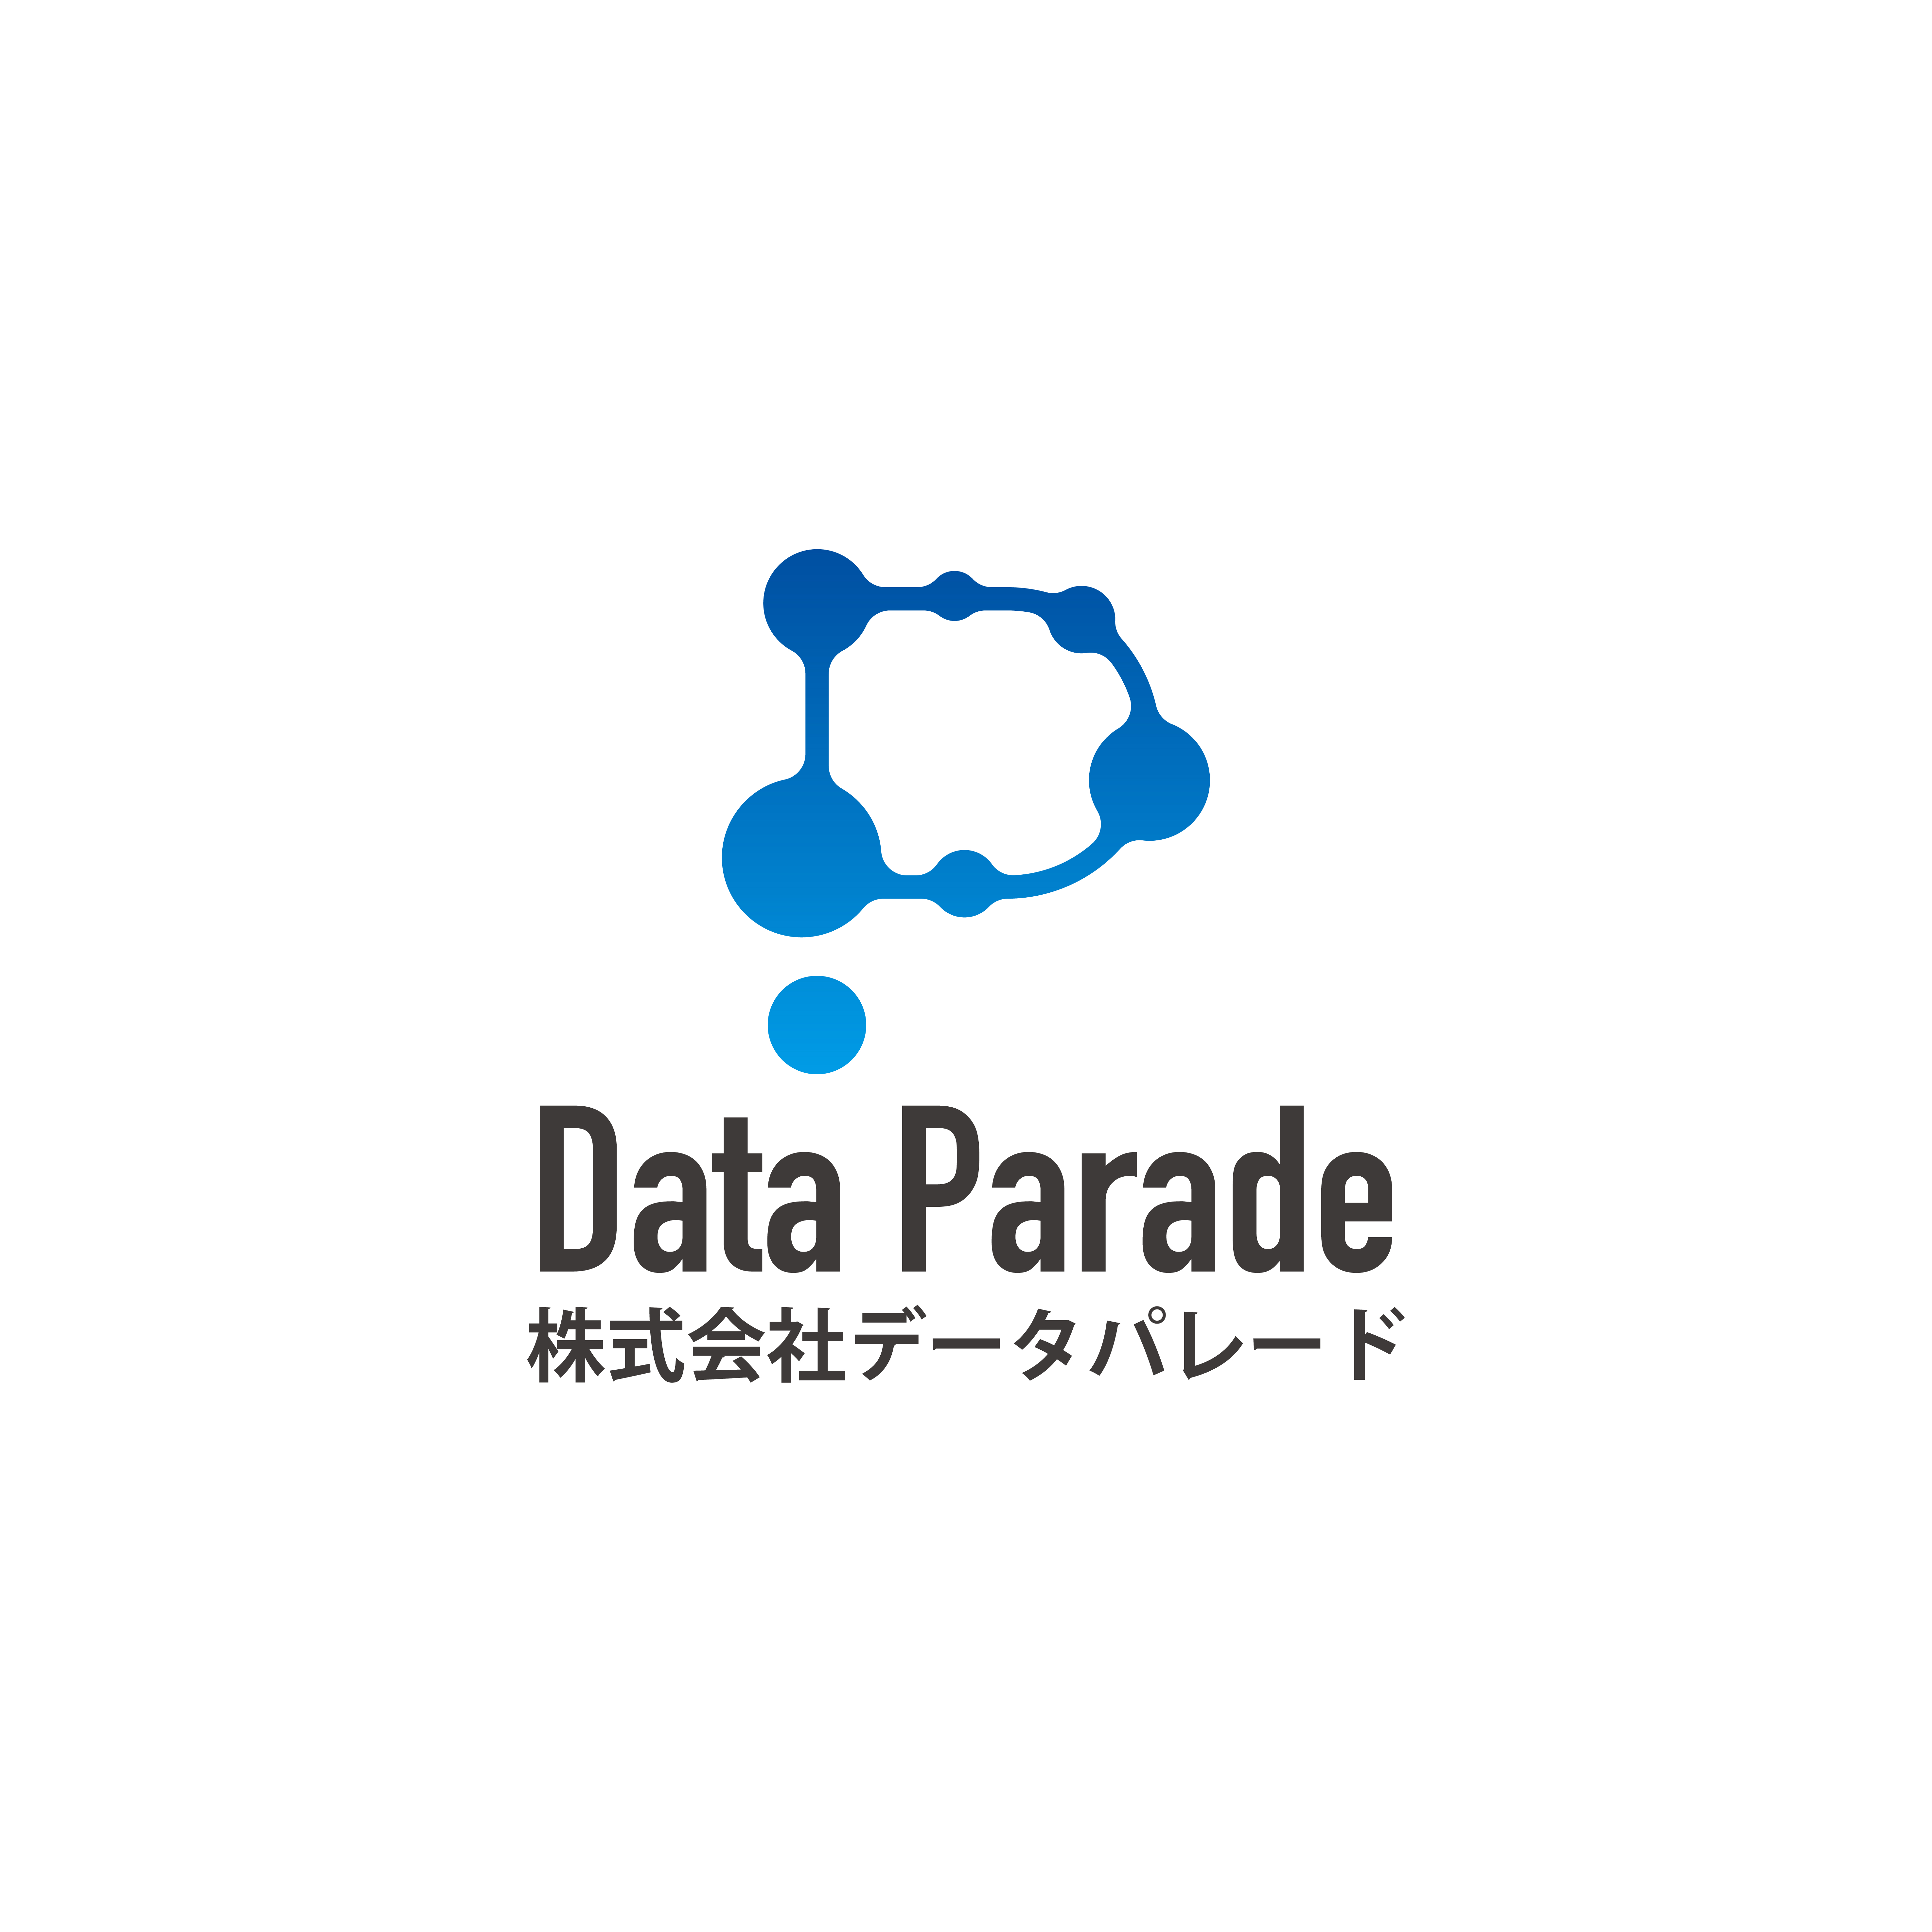 株式会社データパレード